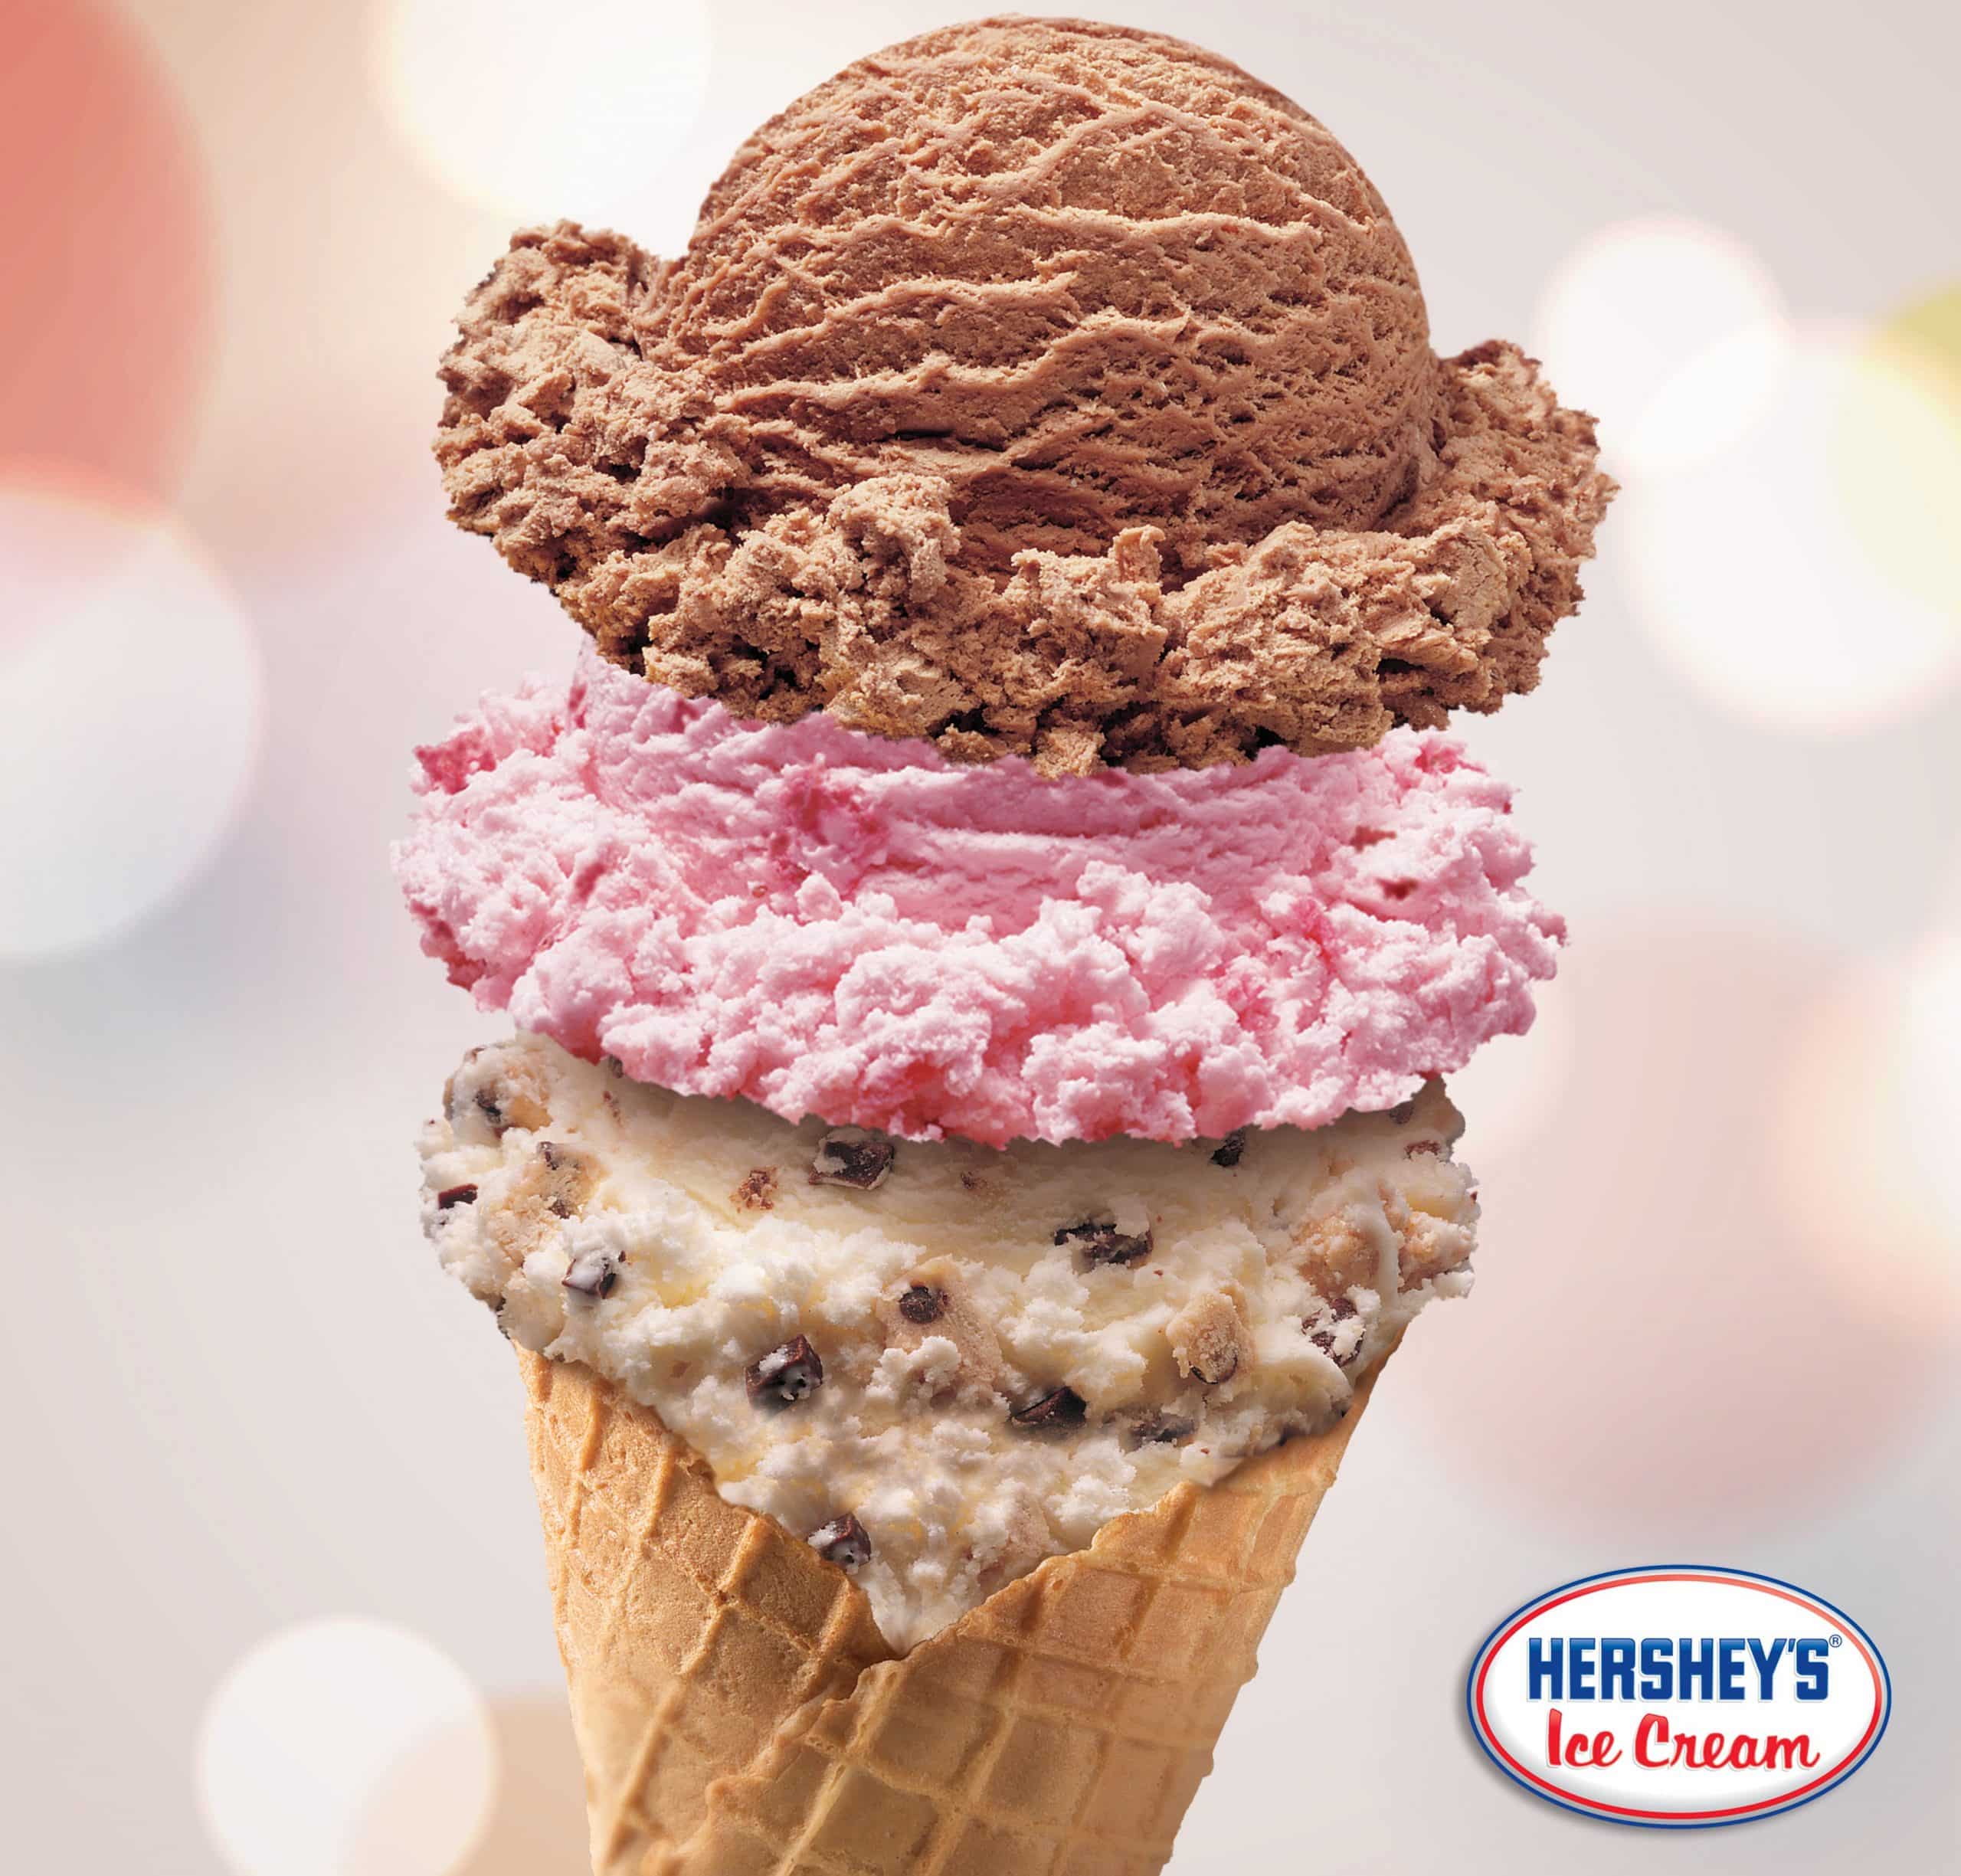 Hersheys Ice Cream Cake Calories